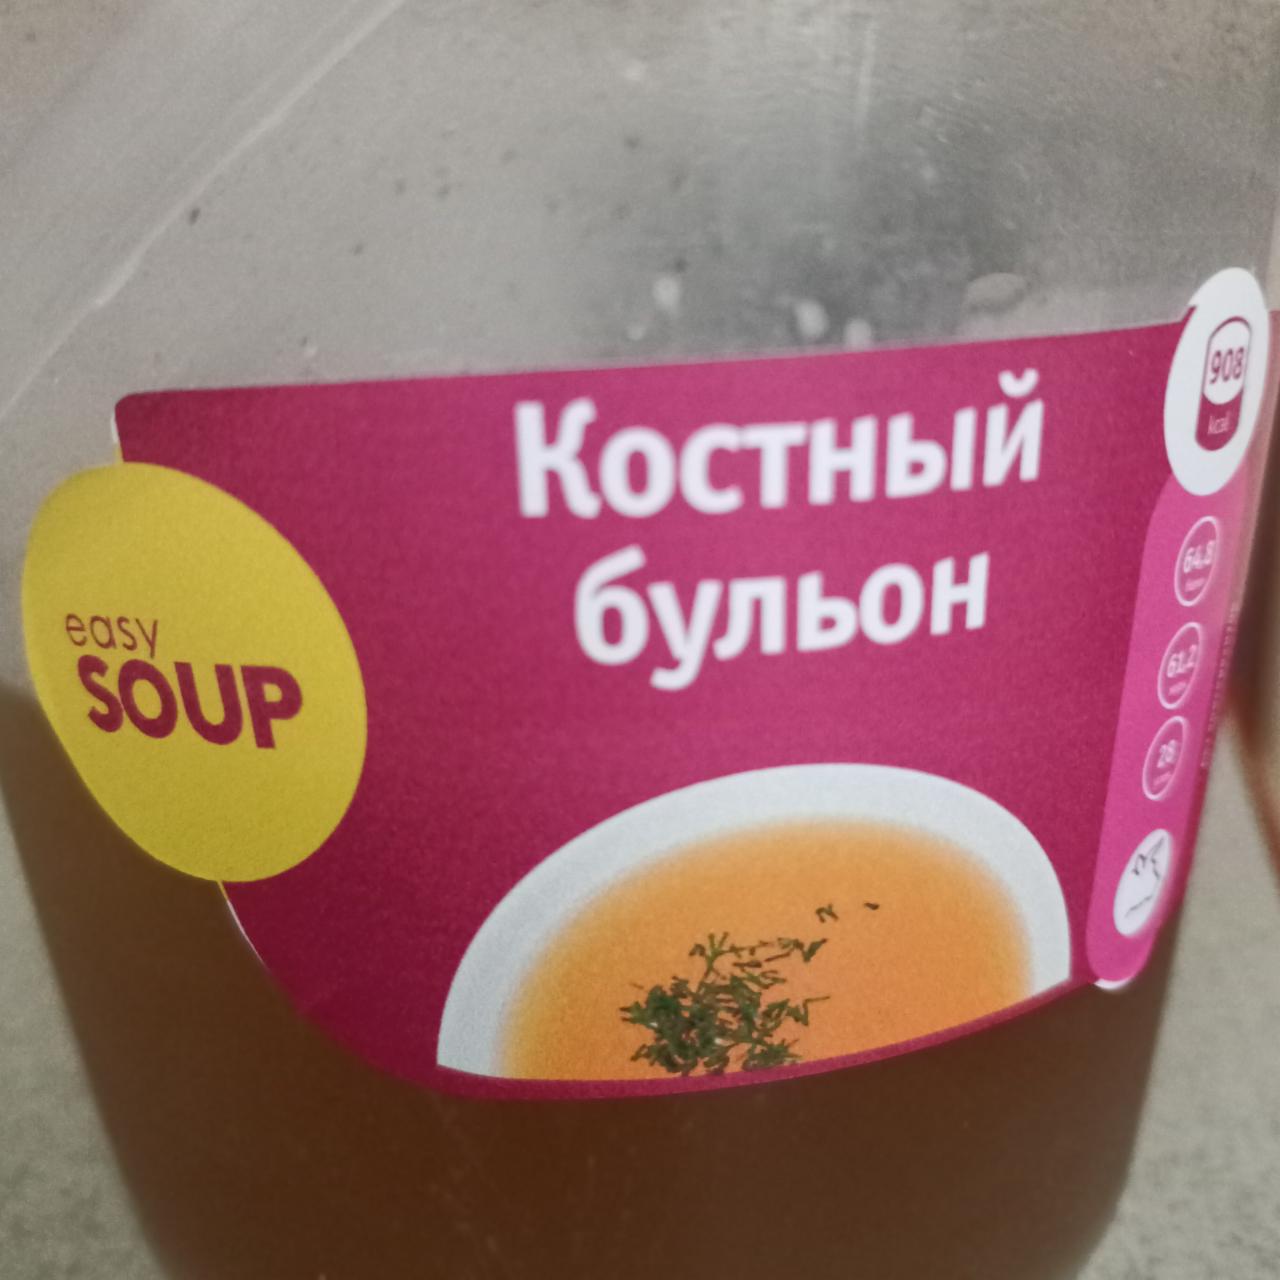 Фото - Костный бульон Easy Soup